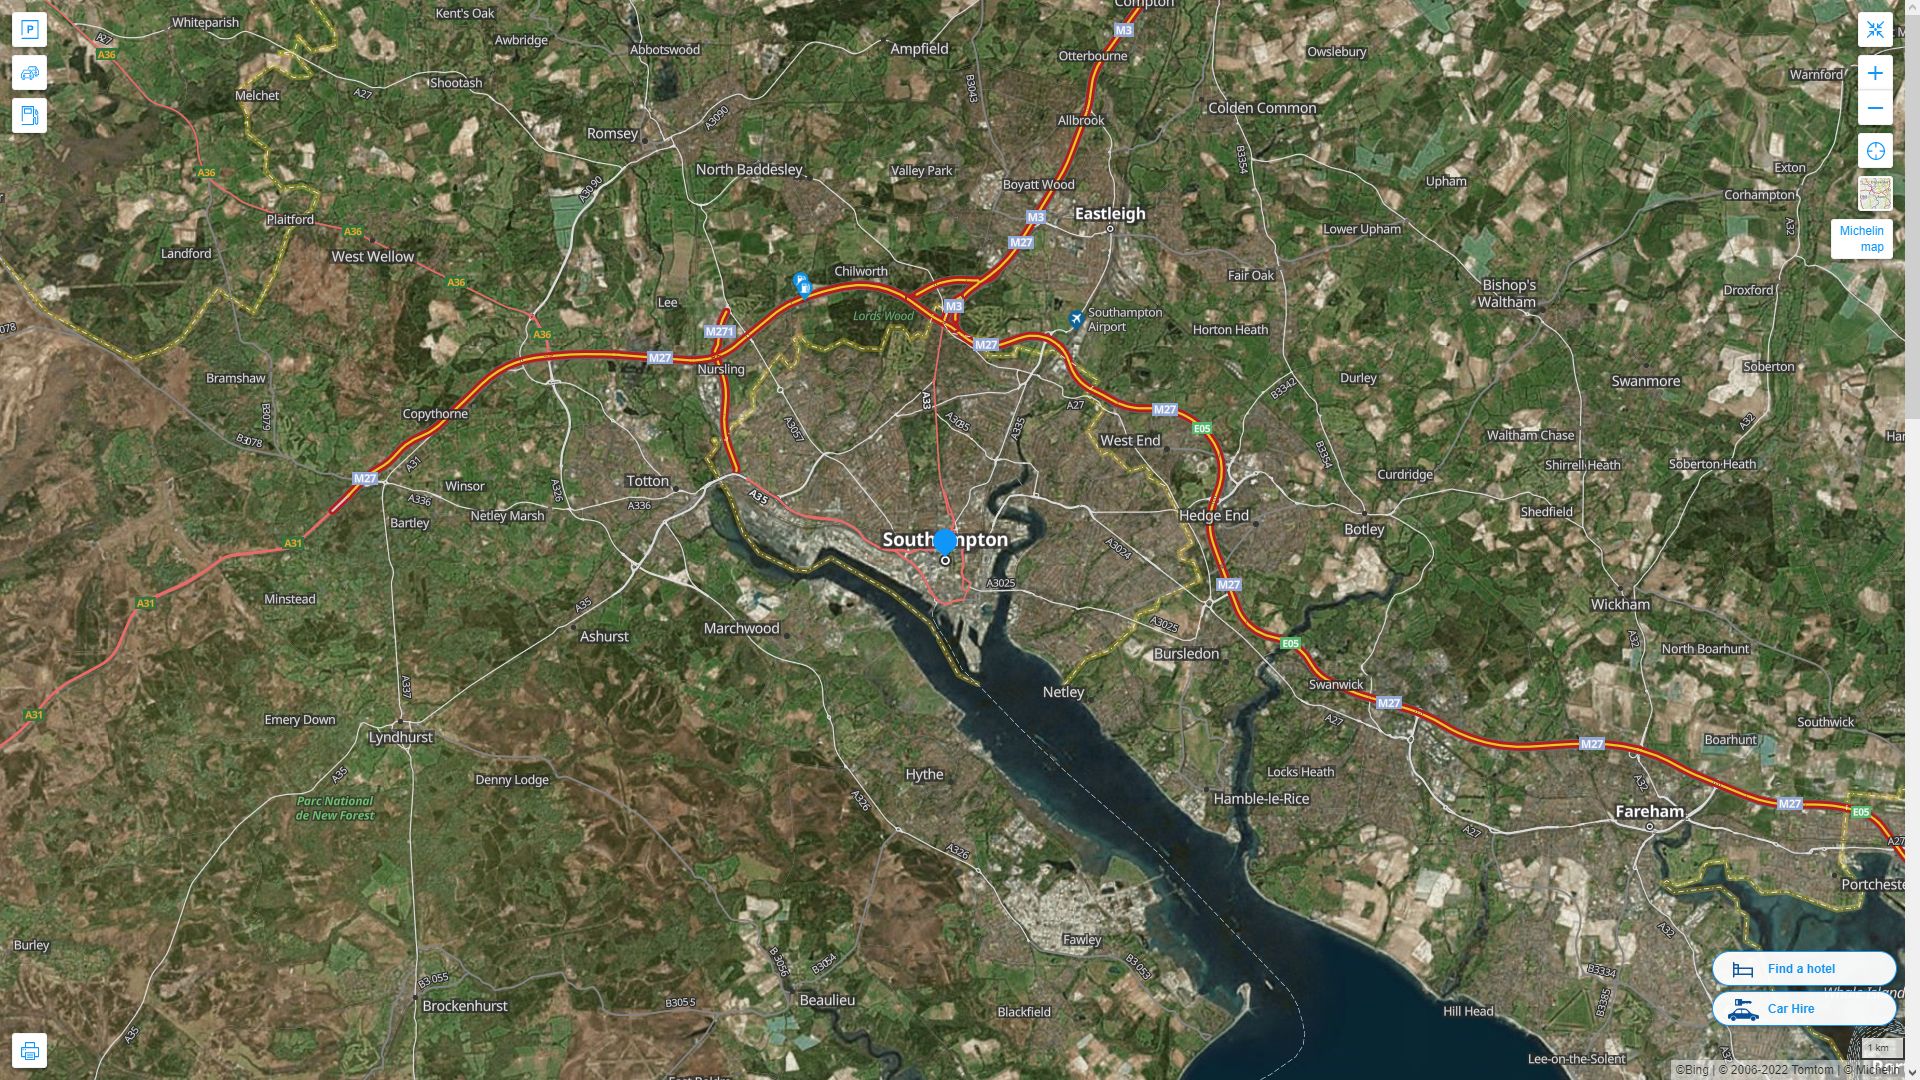 Southampton Royaume Uni Autoroute et carte routiere avec vue satellite